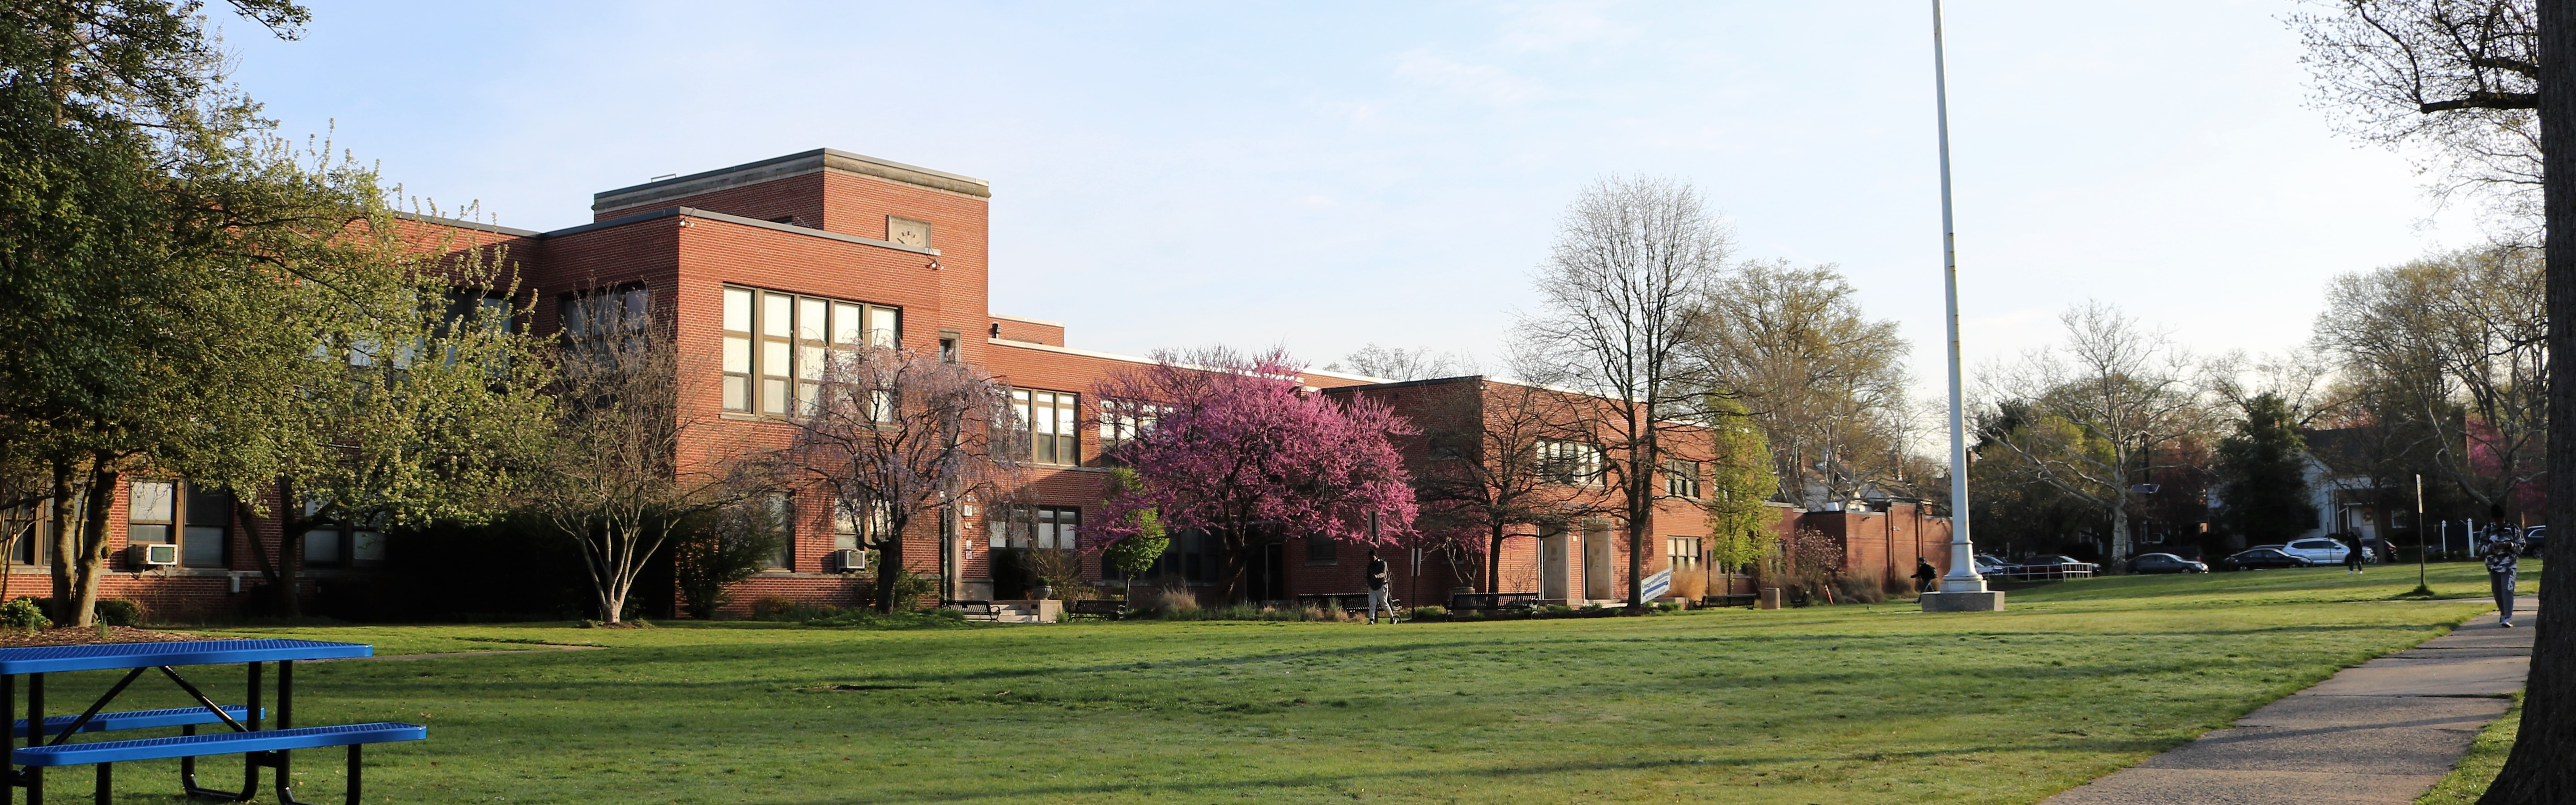 Exterior of Westfield High School